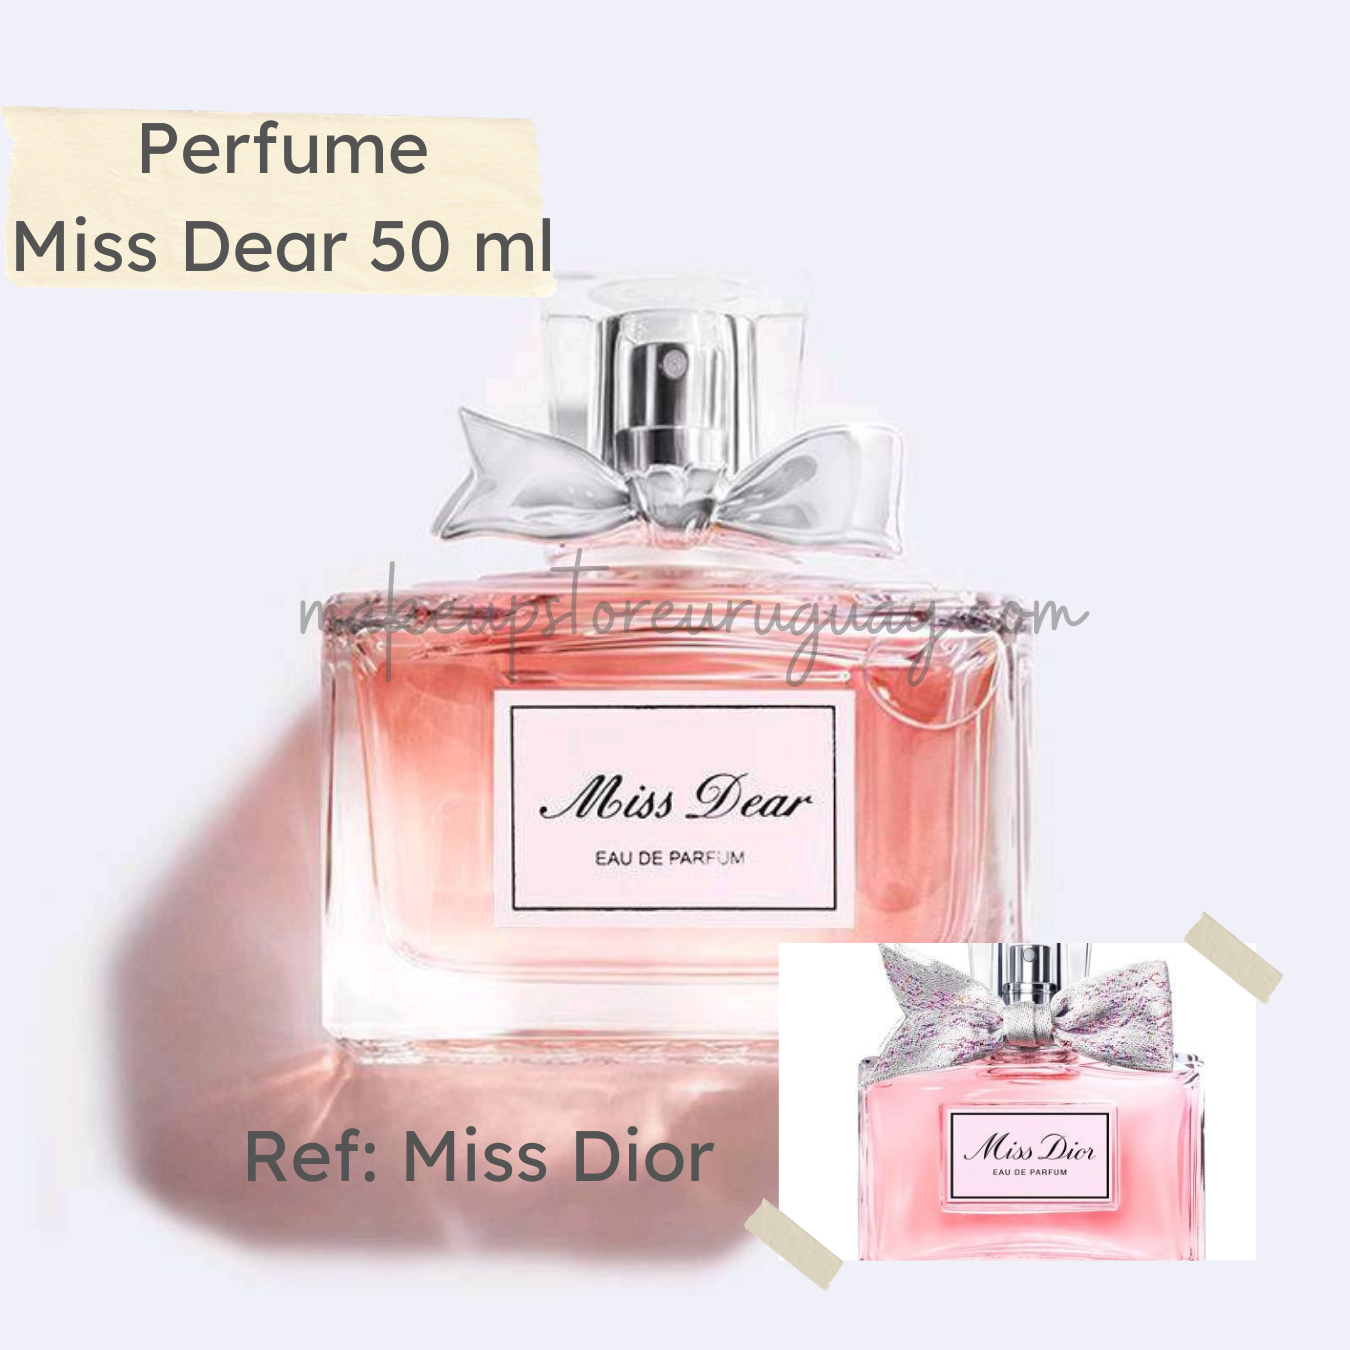 PERFUME Miss Dear. Ref. Miss Dior 50ml.